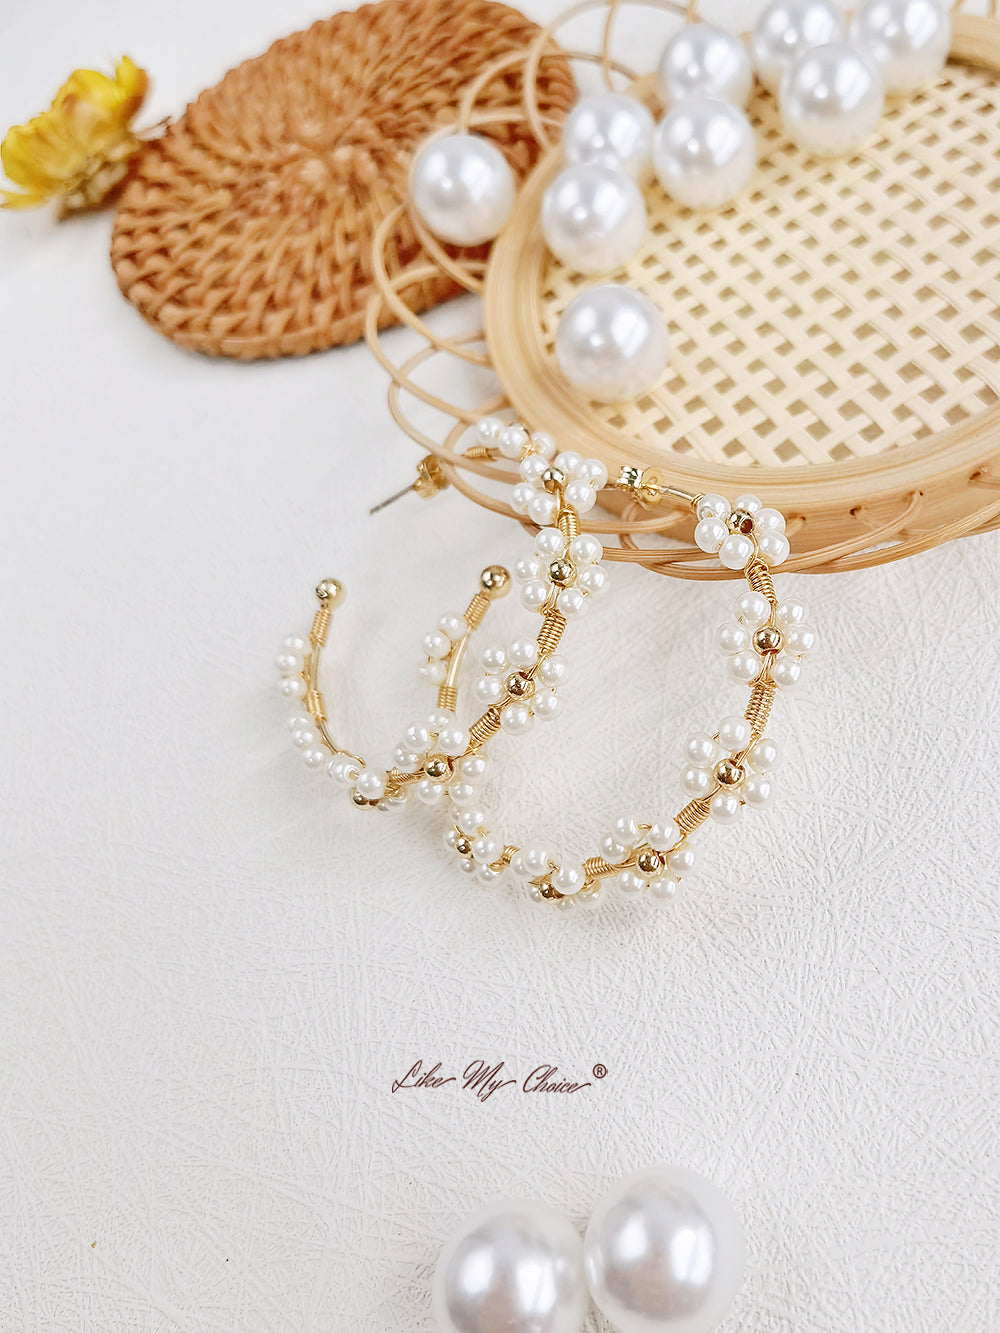 Musas de perlas caprichosas: aretes de perlas nubladas de inspiración bohemia